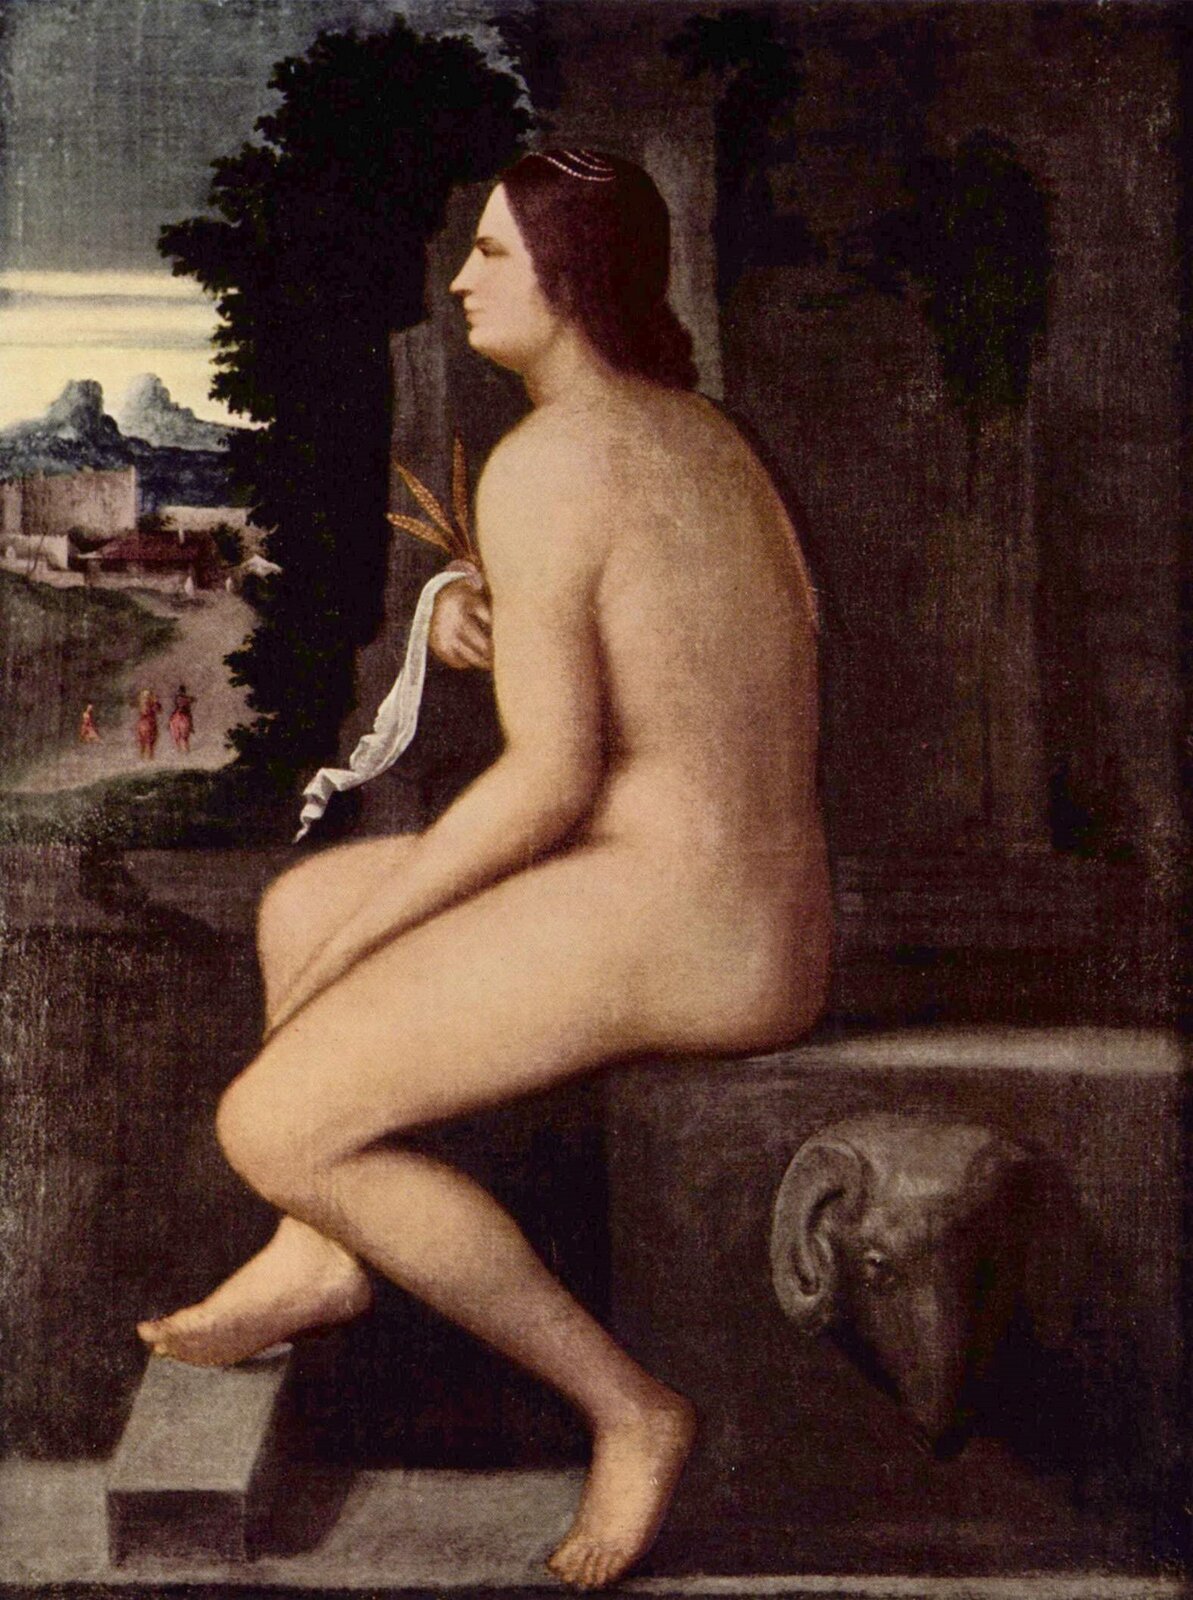 Obraz autorstwa Giorgione „Ceres” przedstawia kobietę siedzącą na brązowym podeście z widocznym zdobieniem – głową byka. Umieszczona na obrazie kobieta jest naga i pozuje z profilu – ma długie ciemne włosy, jedna dłoń swobodnie leży na udzie, zaś druga dłoń owinięta biało-złotym materiałem zakrywa piersi. Kobieta spogląda na miasto, które znajduje się w górnej lewej części obrazu – w tle widoczne są budynki, spacerujące kobiety ubrane w czerwone suknie, oraz góry. 